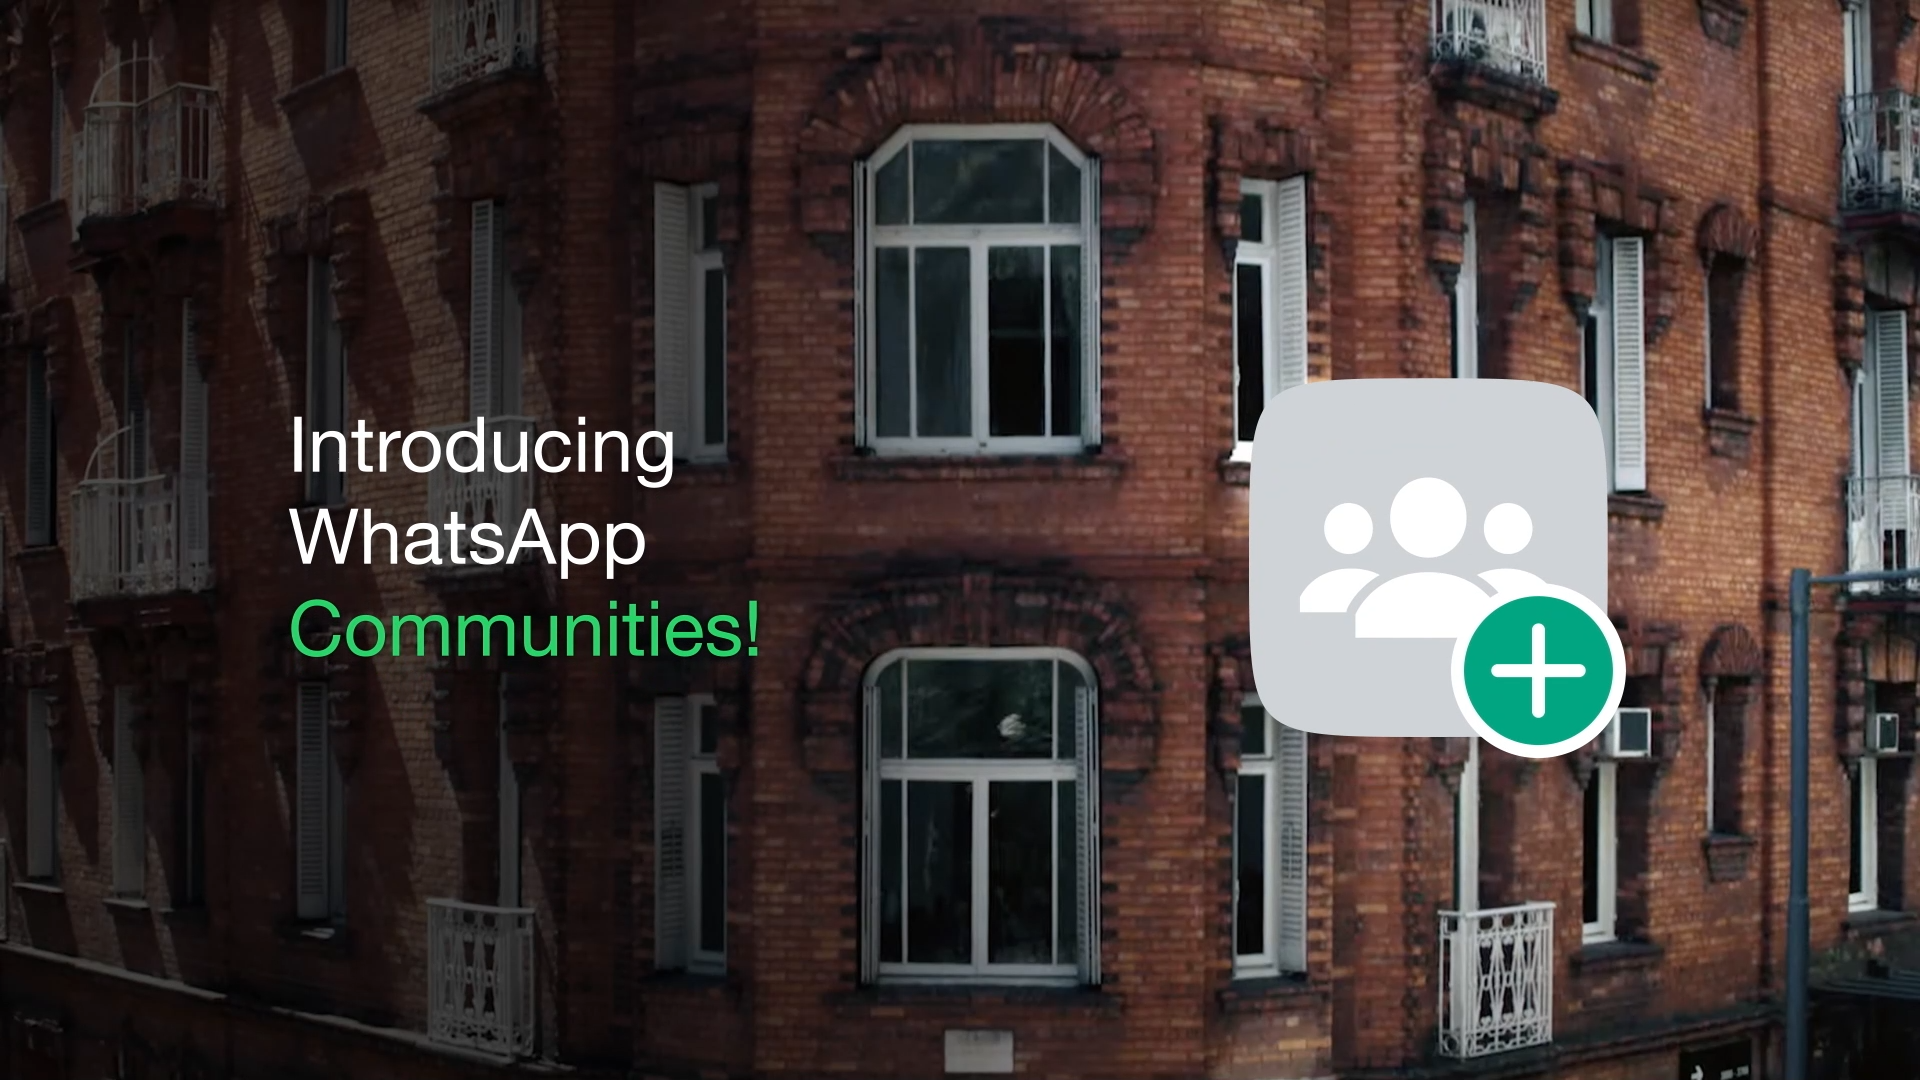 تهدف ميزة مجتمعات WhatsApp الجديدة إلى الجمع بين الدردشات الجماعية ذات الصلة معًا